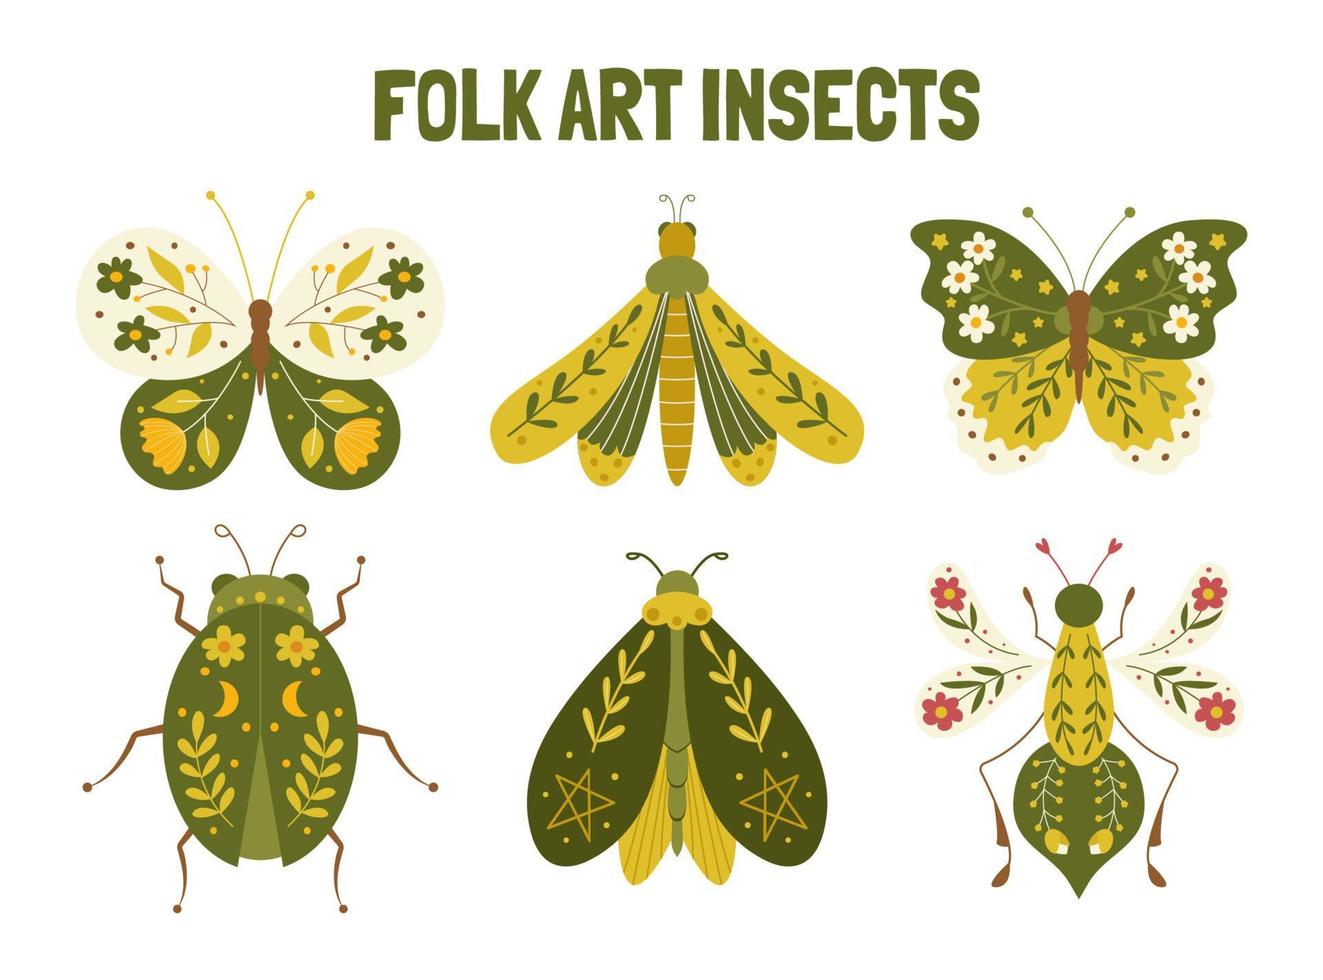 Frühling Motive im Volk Kunst Stil. Volk Kunst Insekten Vektor